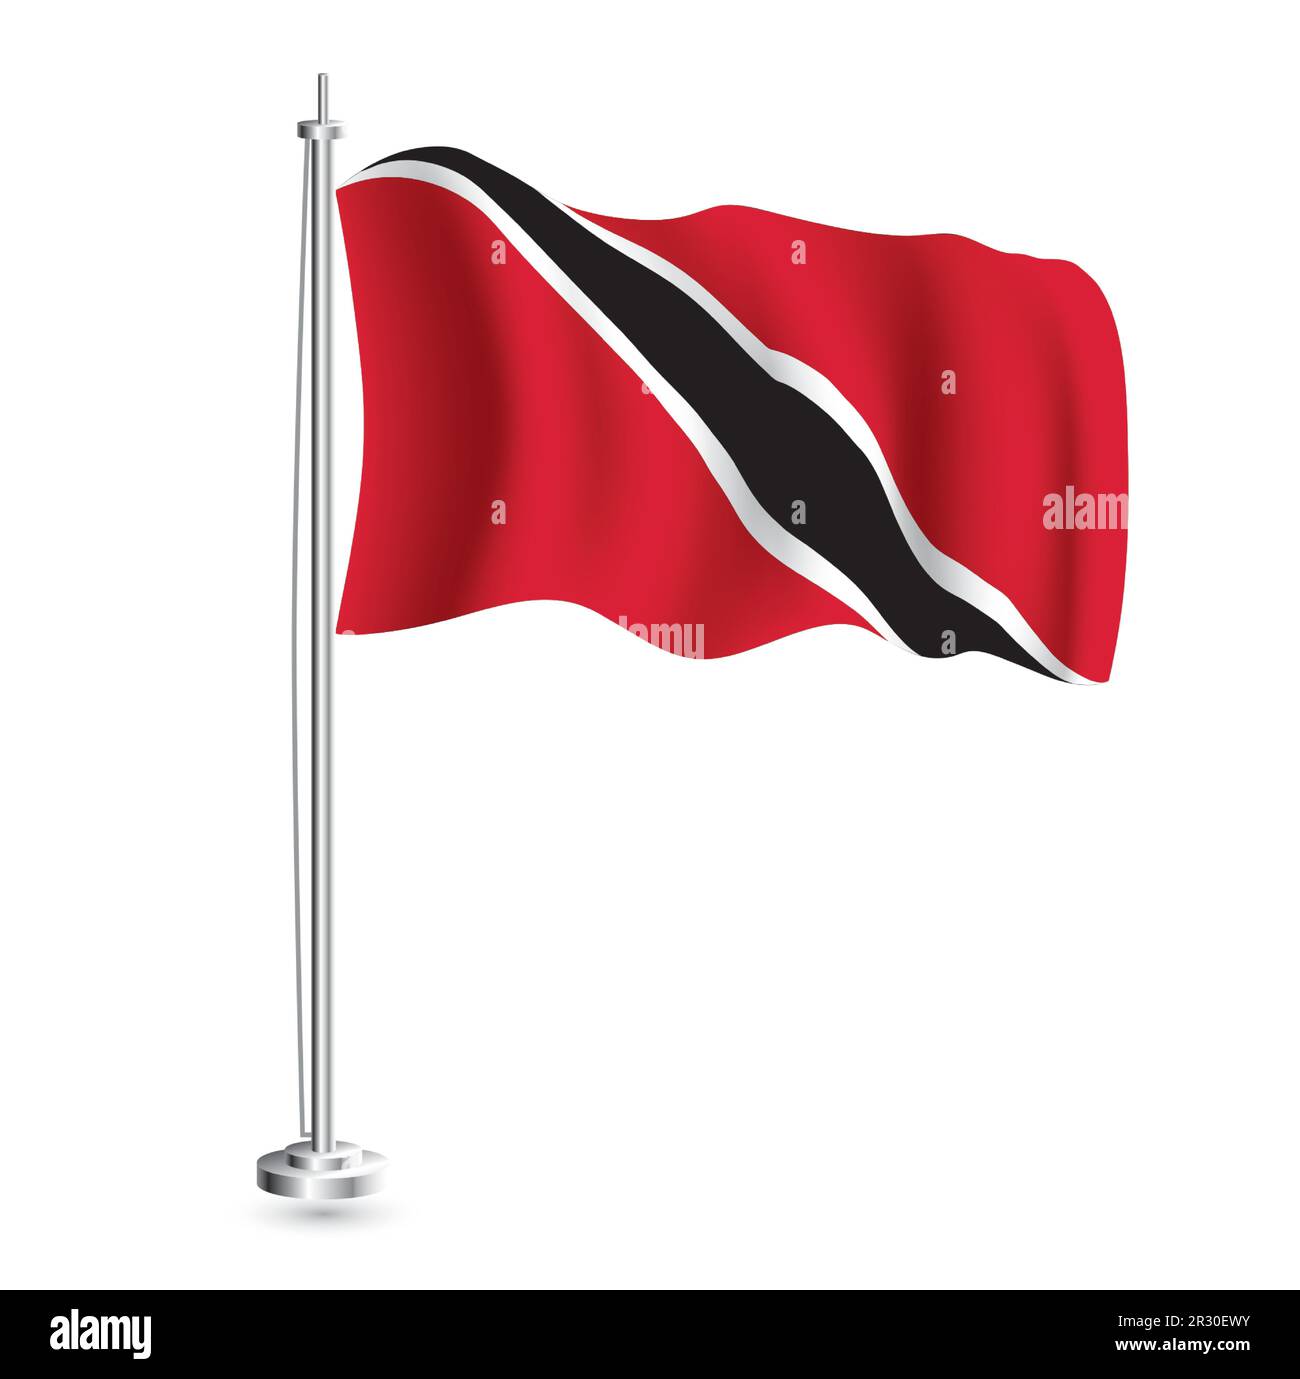 Drapeau de Trinité-et-Tobago. Drapeau vague réaliste isolé du pays de Trinité-et-Tobago à Flagpole. Illustration vectorielle. Illustration de Vecteur